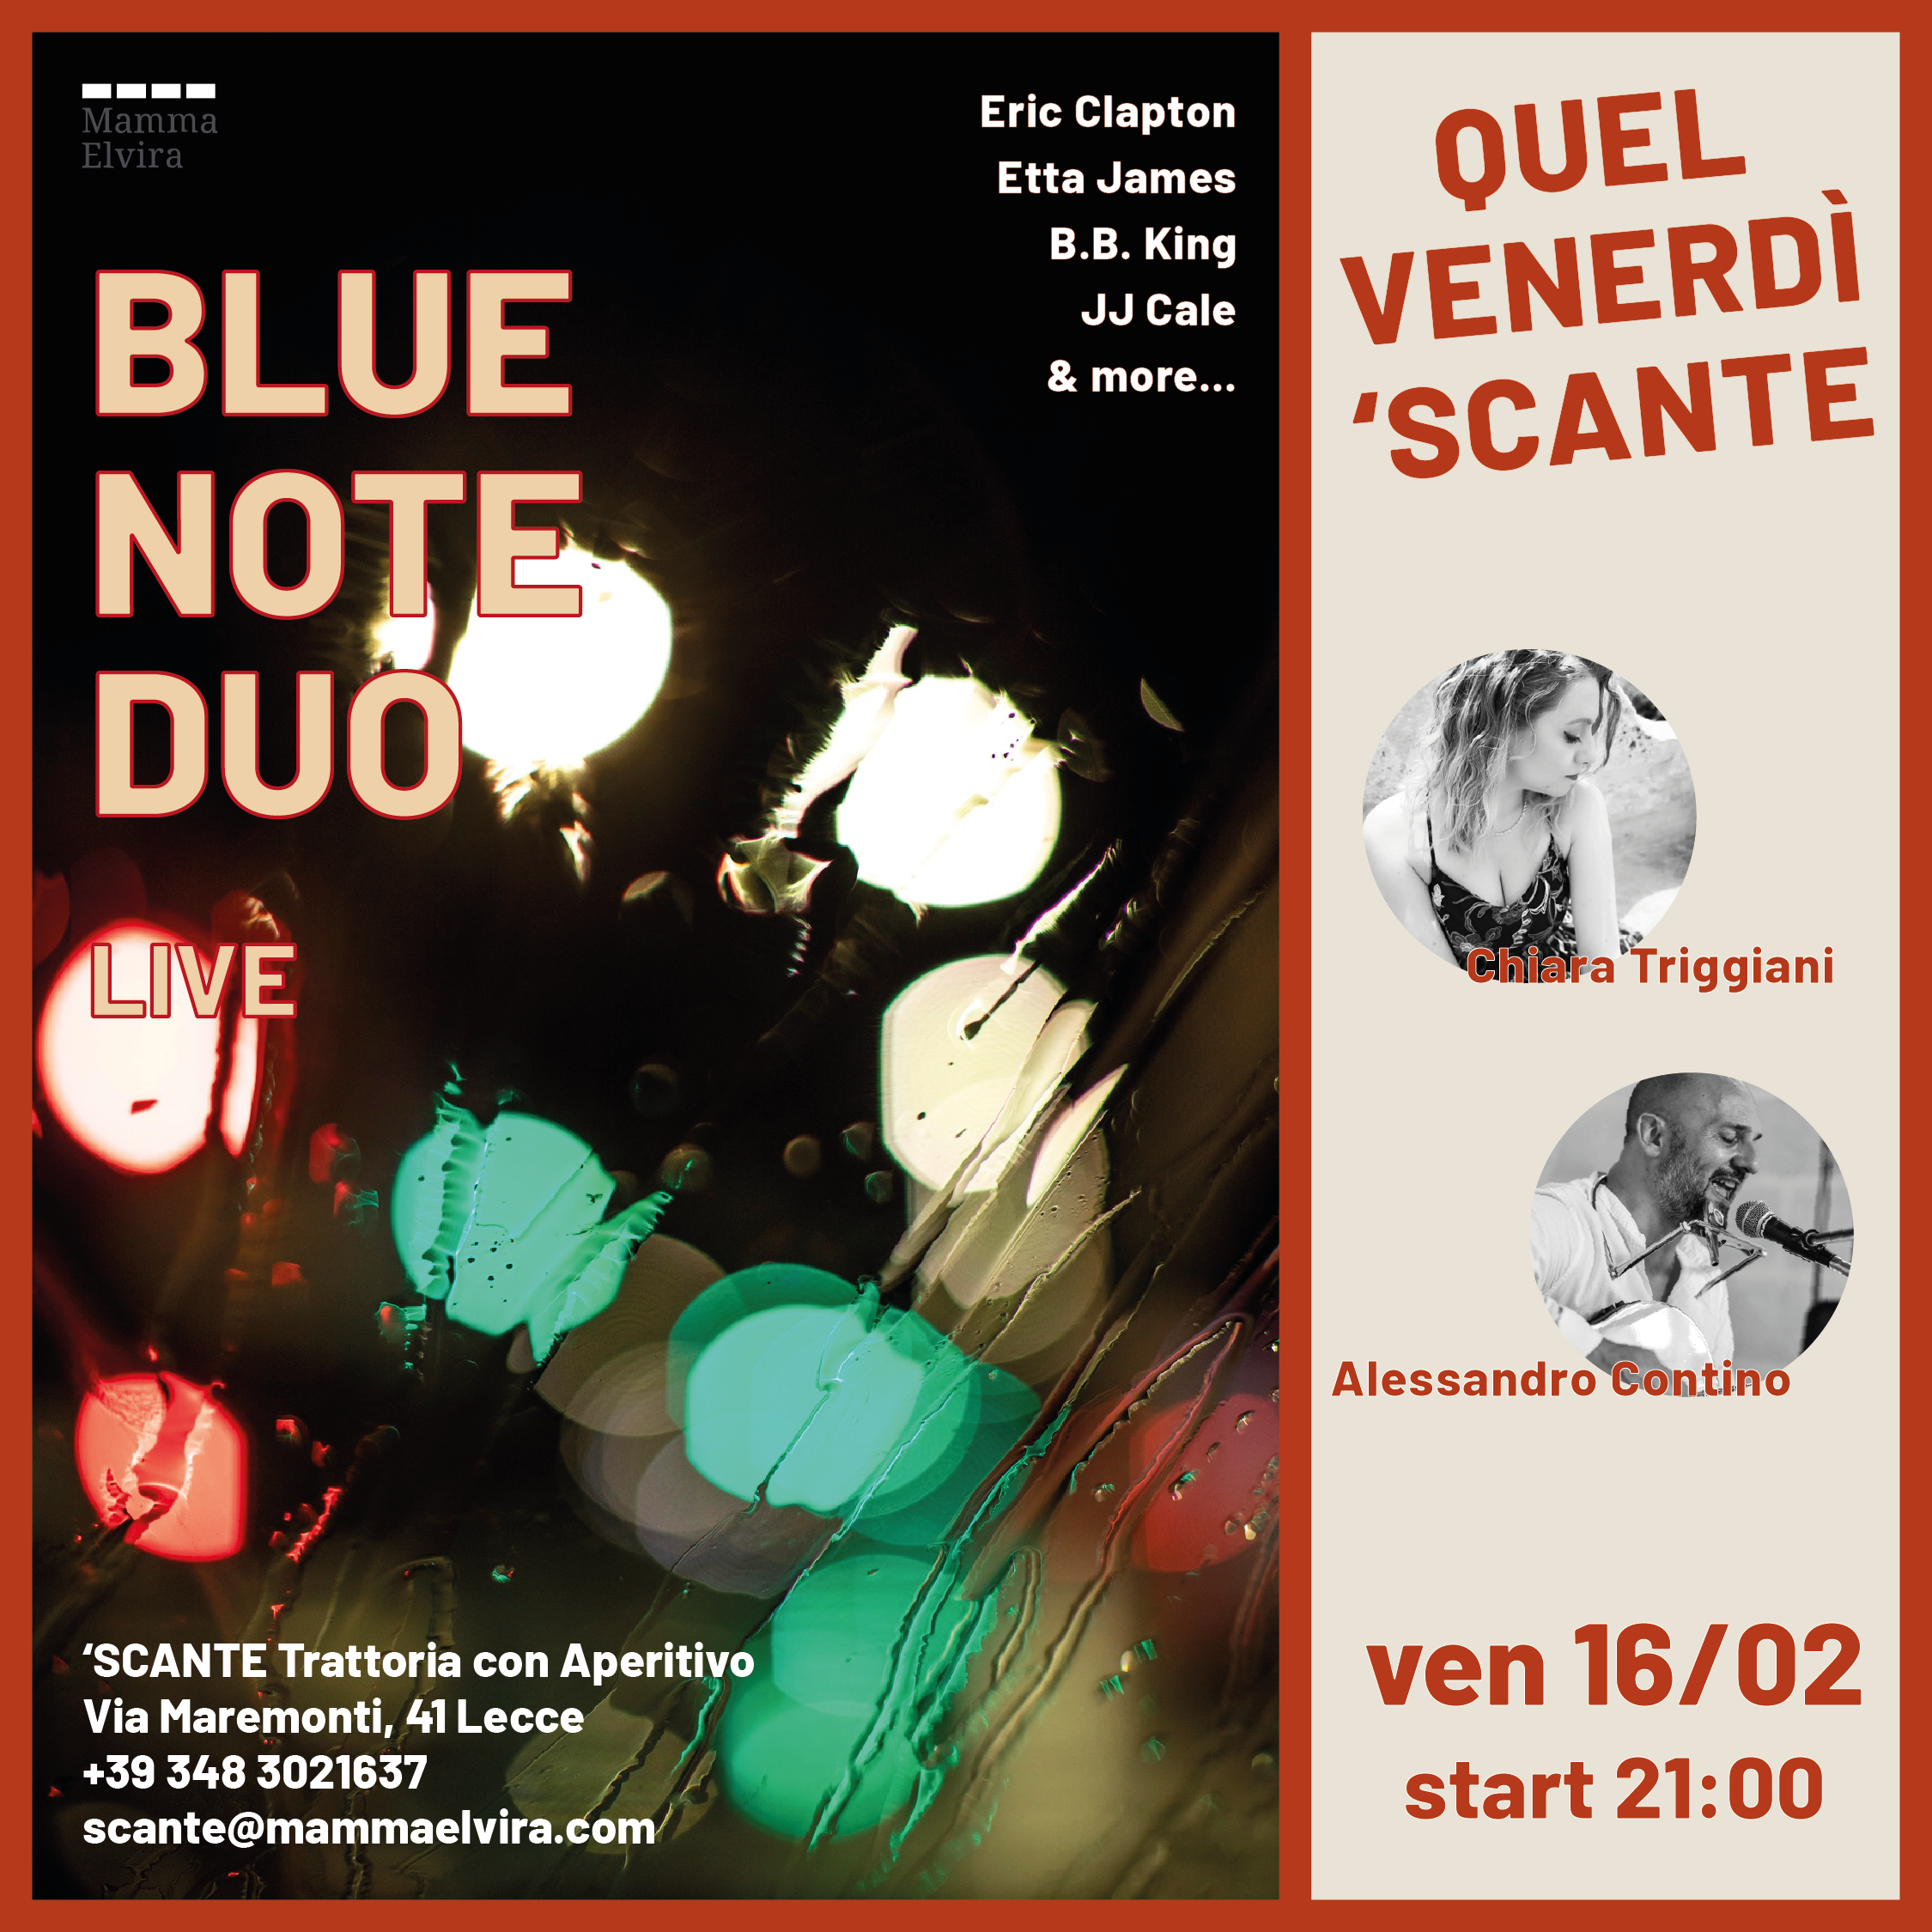 Blue Note Duo da 'Scante cover image